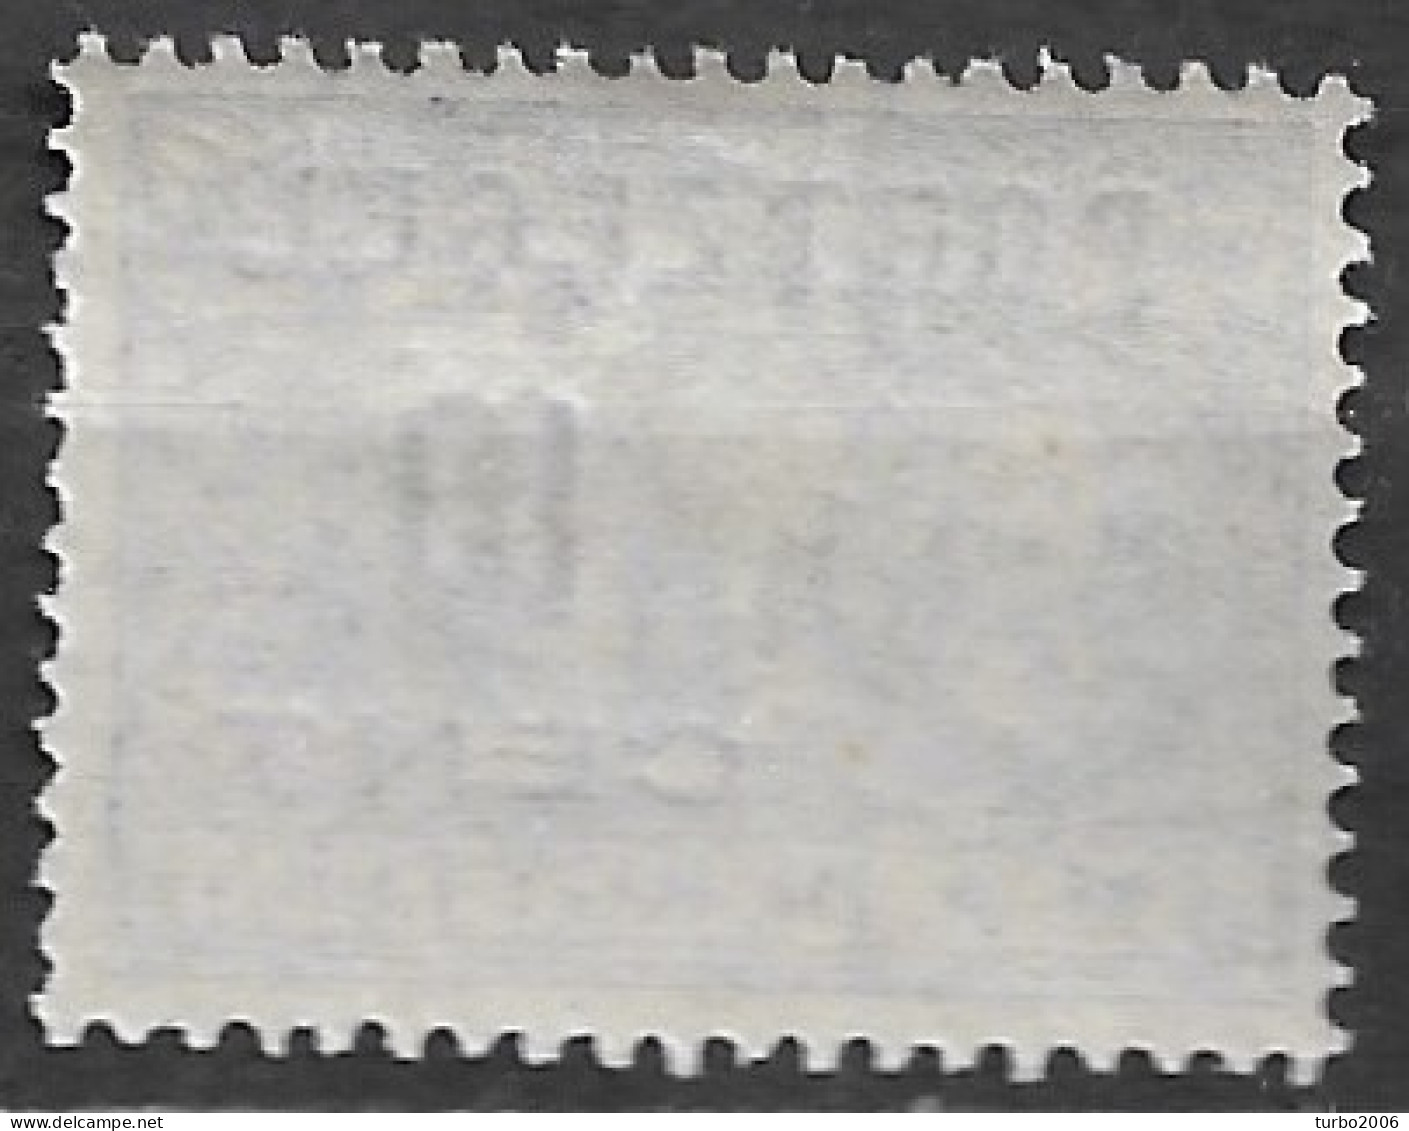 Plaatfout Streepje Door D In 1907 Portzegels De Ruyter 10 Ct / ½ Ct NVPH ) P 38 Postfris - Postage Due